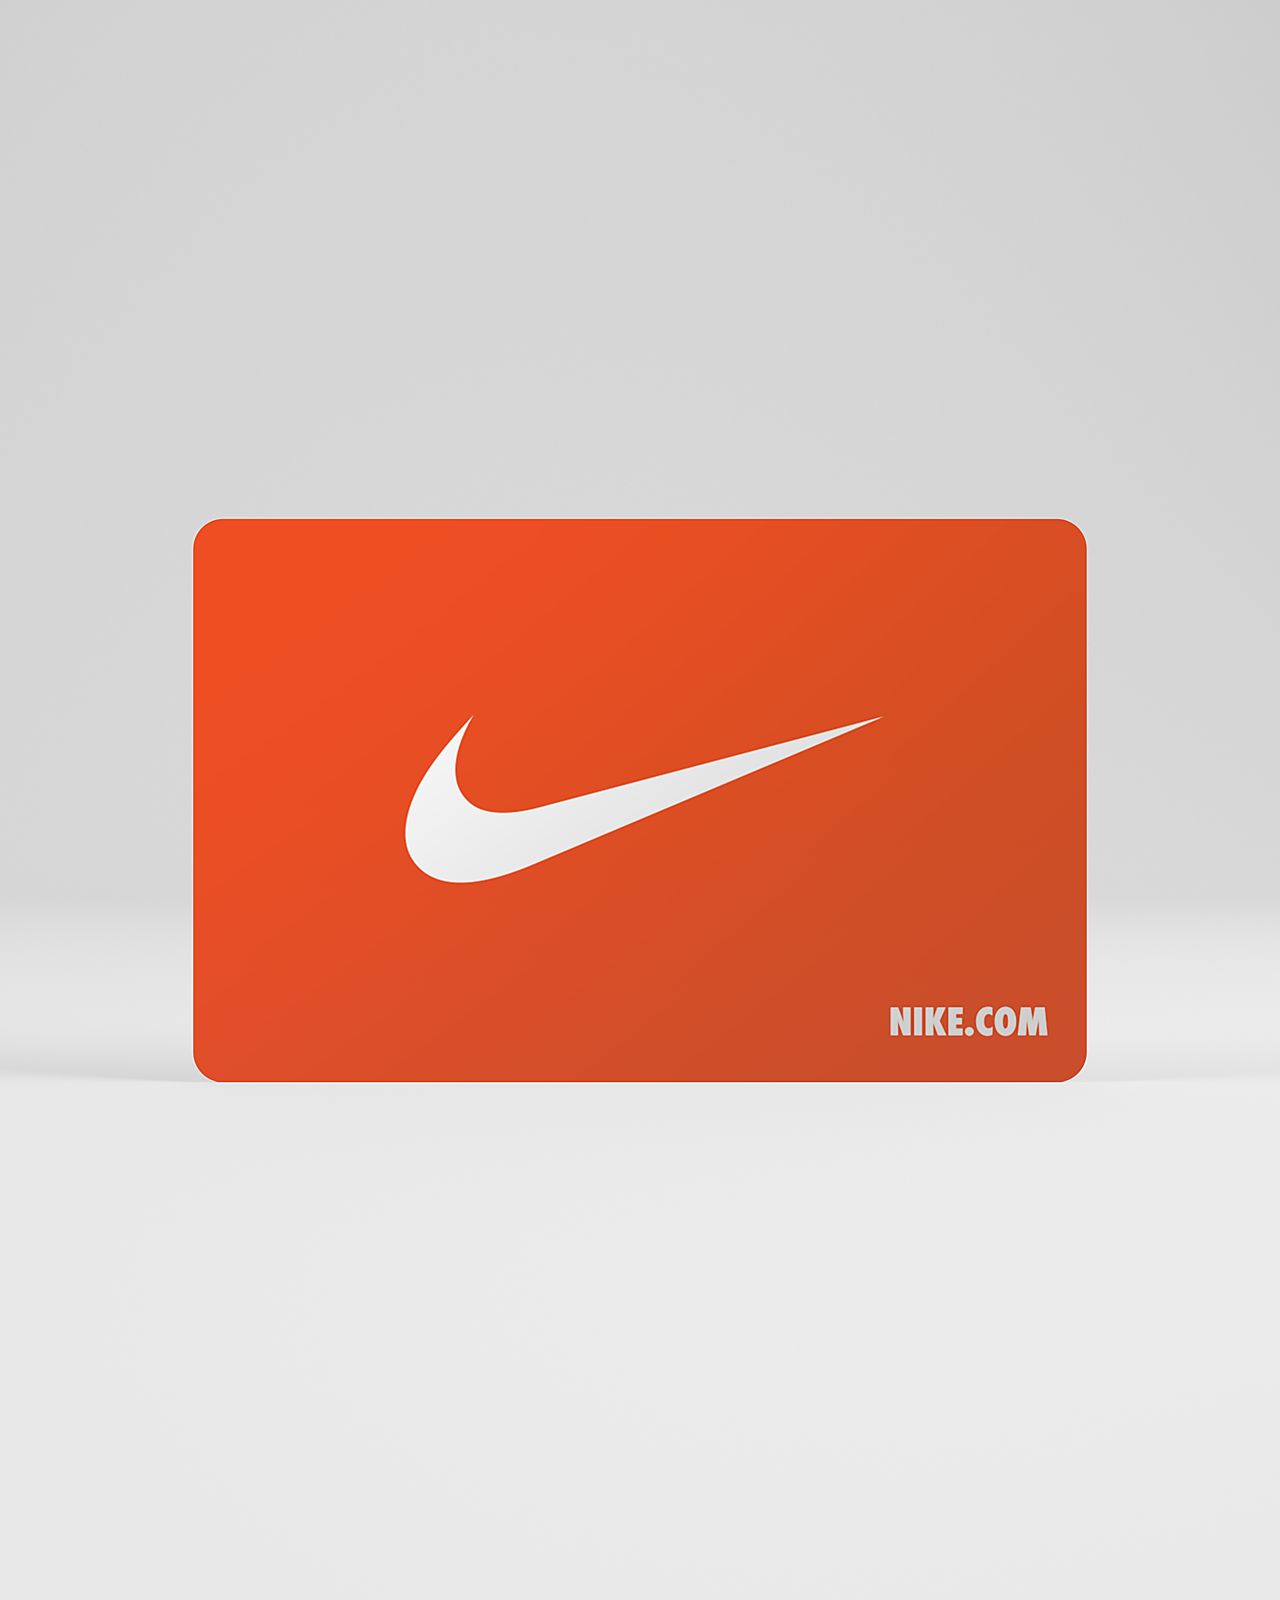 NikeGiftCard .